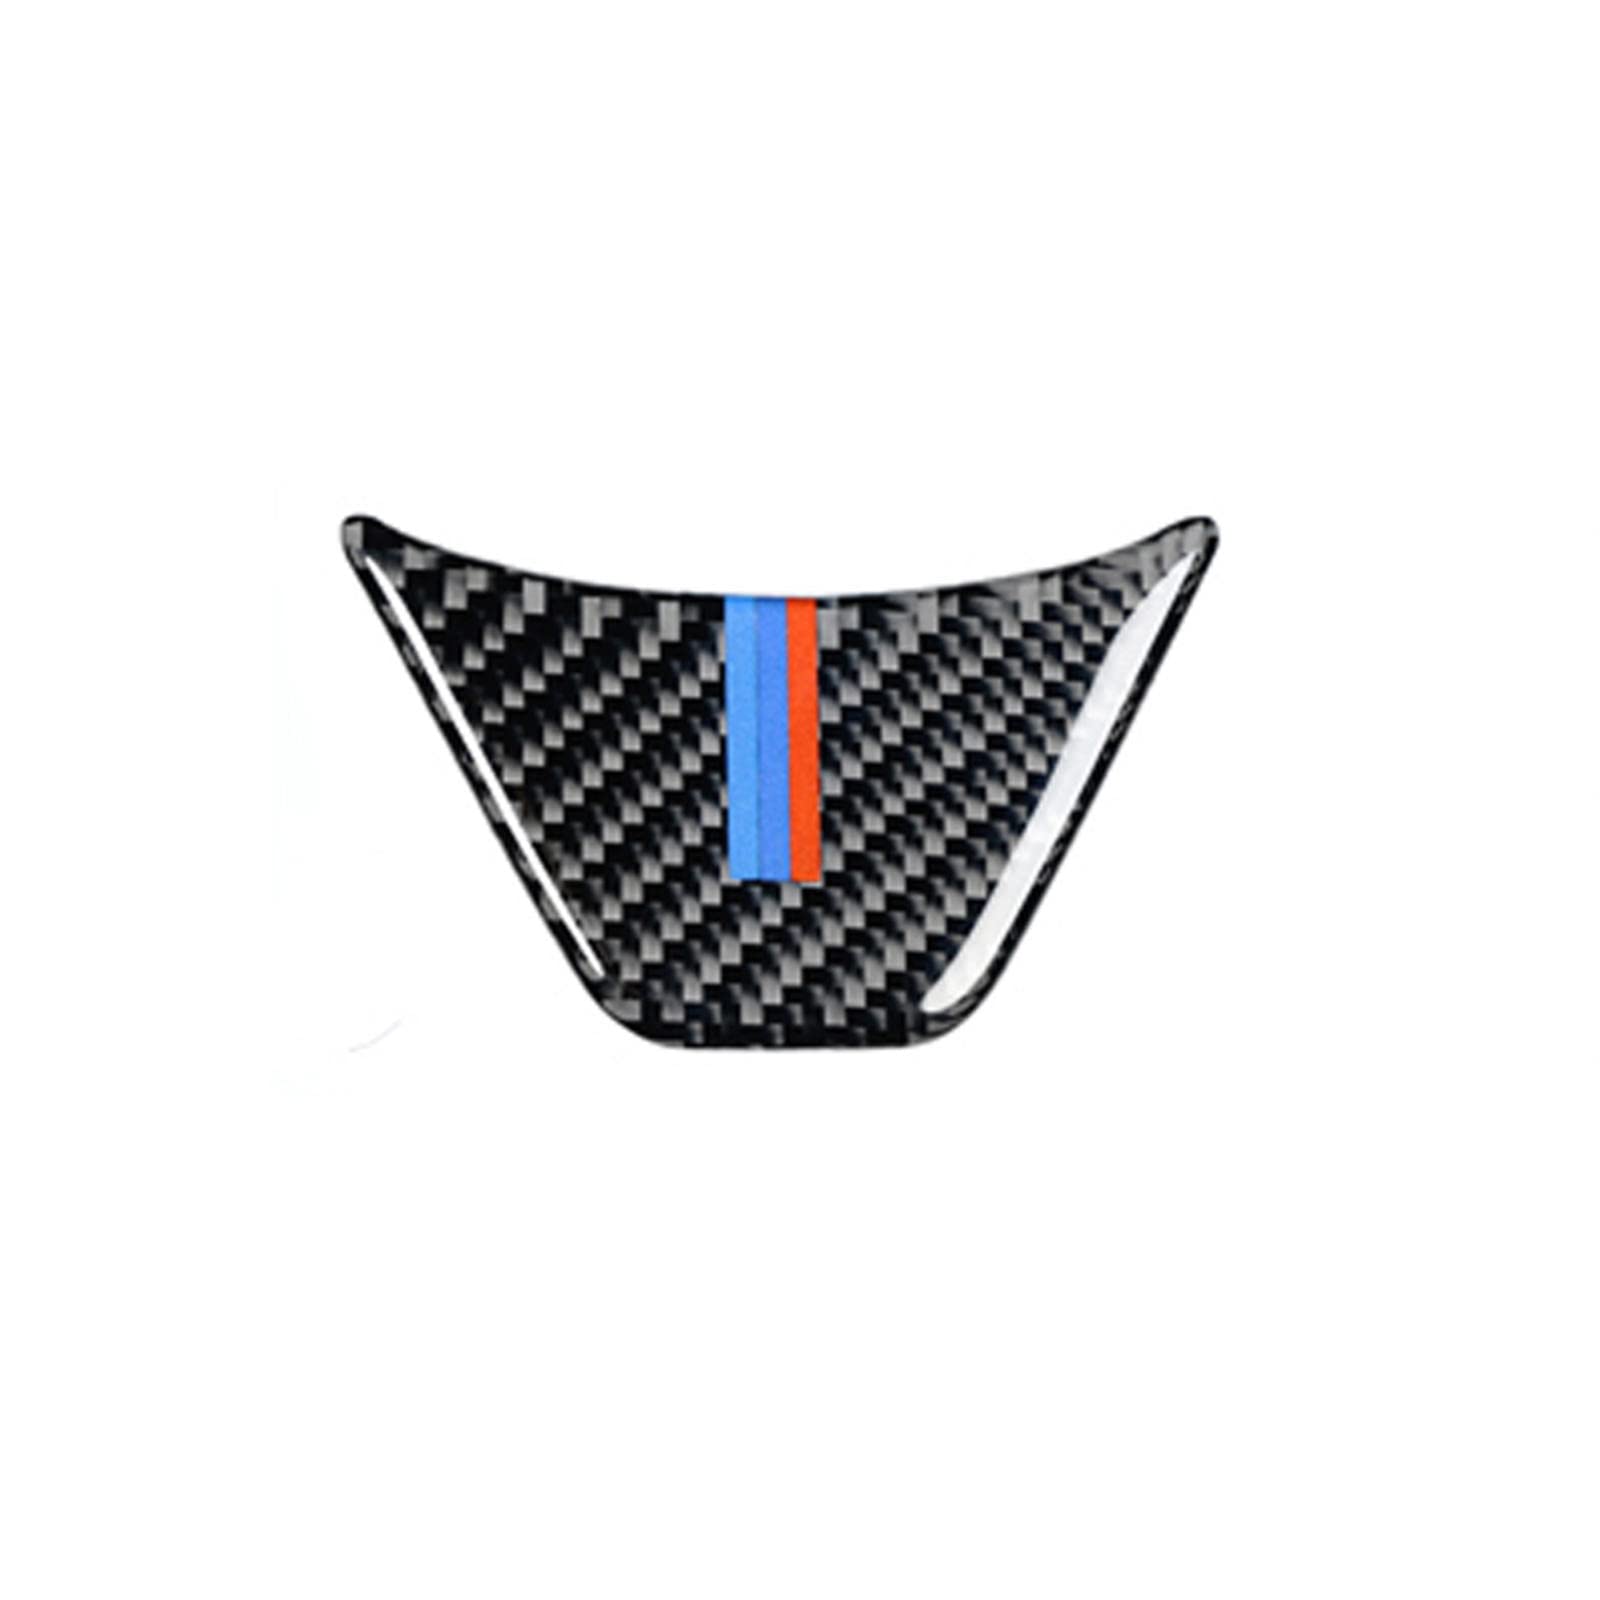 LAYGU Kohlefaser Auto Lenkrad Emblem Aufkleber, für BMW F48 E84 X1 F07 F10 F01 F20 F30 G30 E60 E90 E92 E93 X5 X6 Z4 von LAYGU